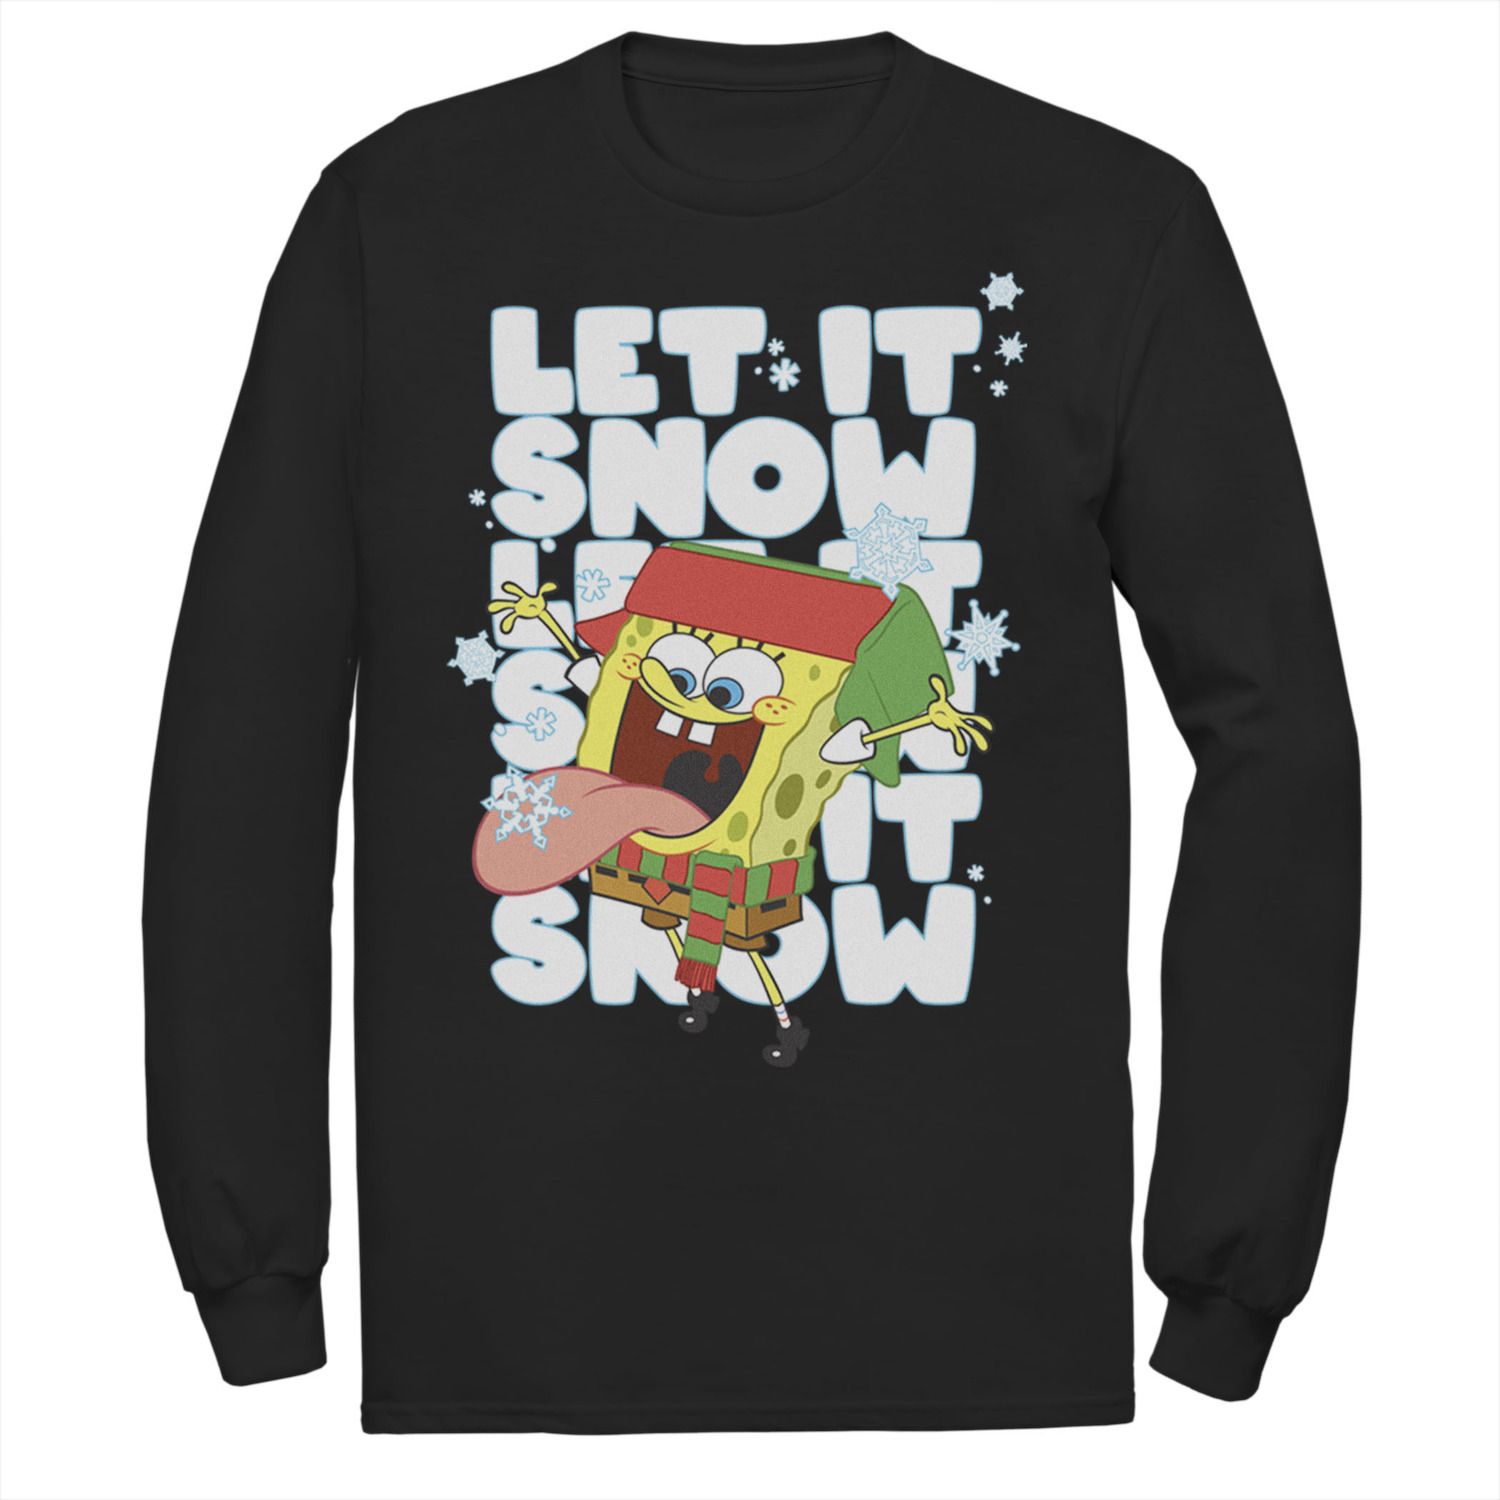 Мужская футболка SpongeBob Let It Snow Let It Snow Let It Snow с длинными рукавами и цветами Nickelodeon, черный